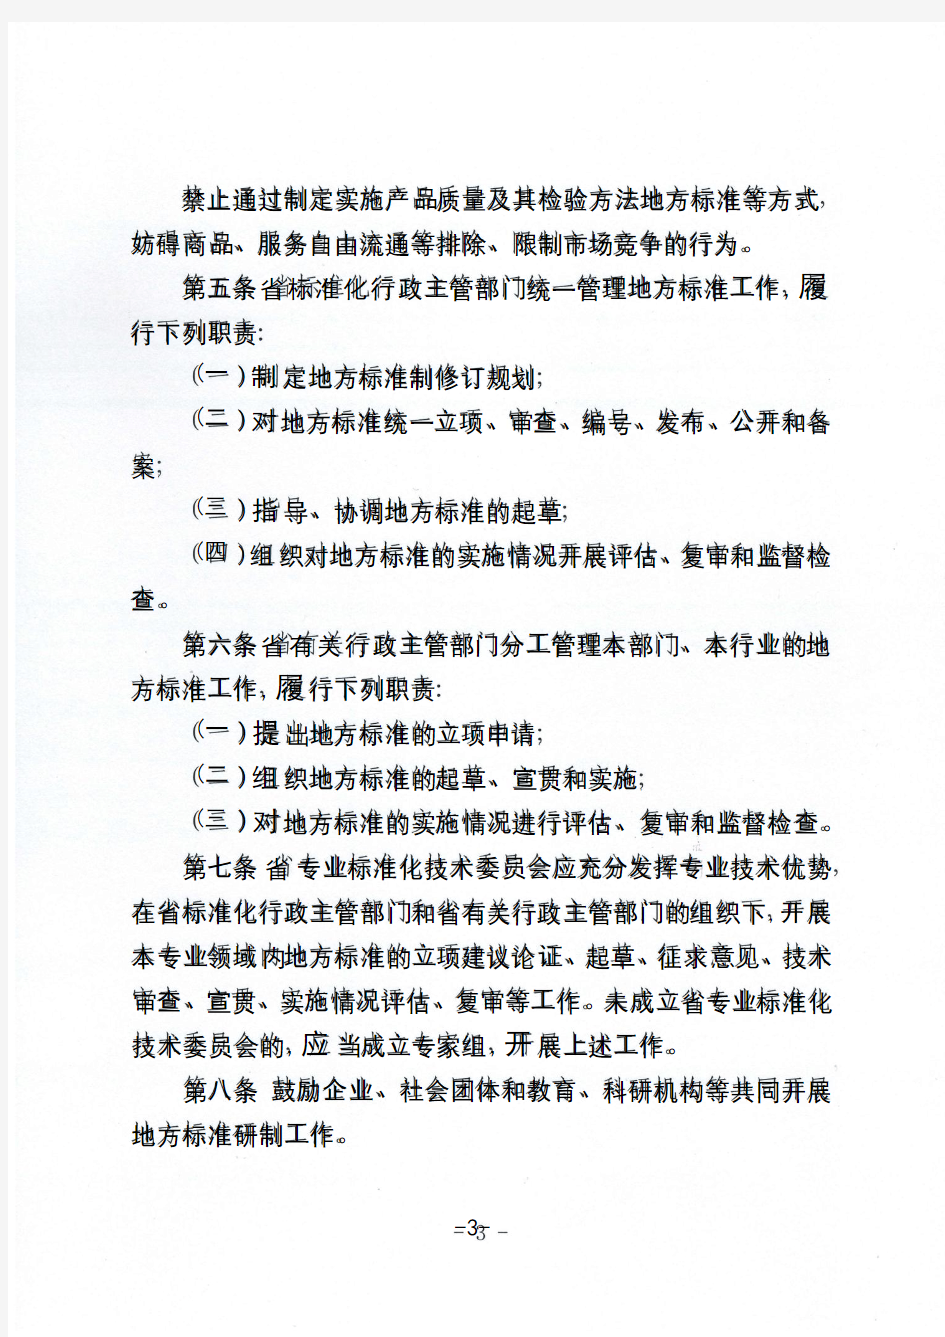 辽宁省地方标准管理办法(2020年版)